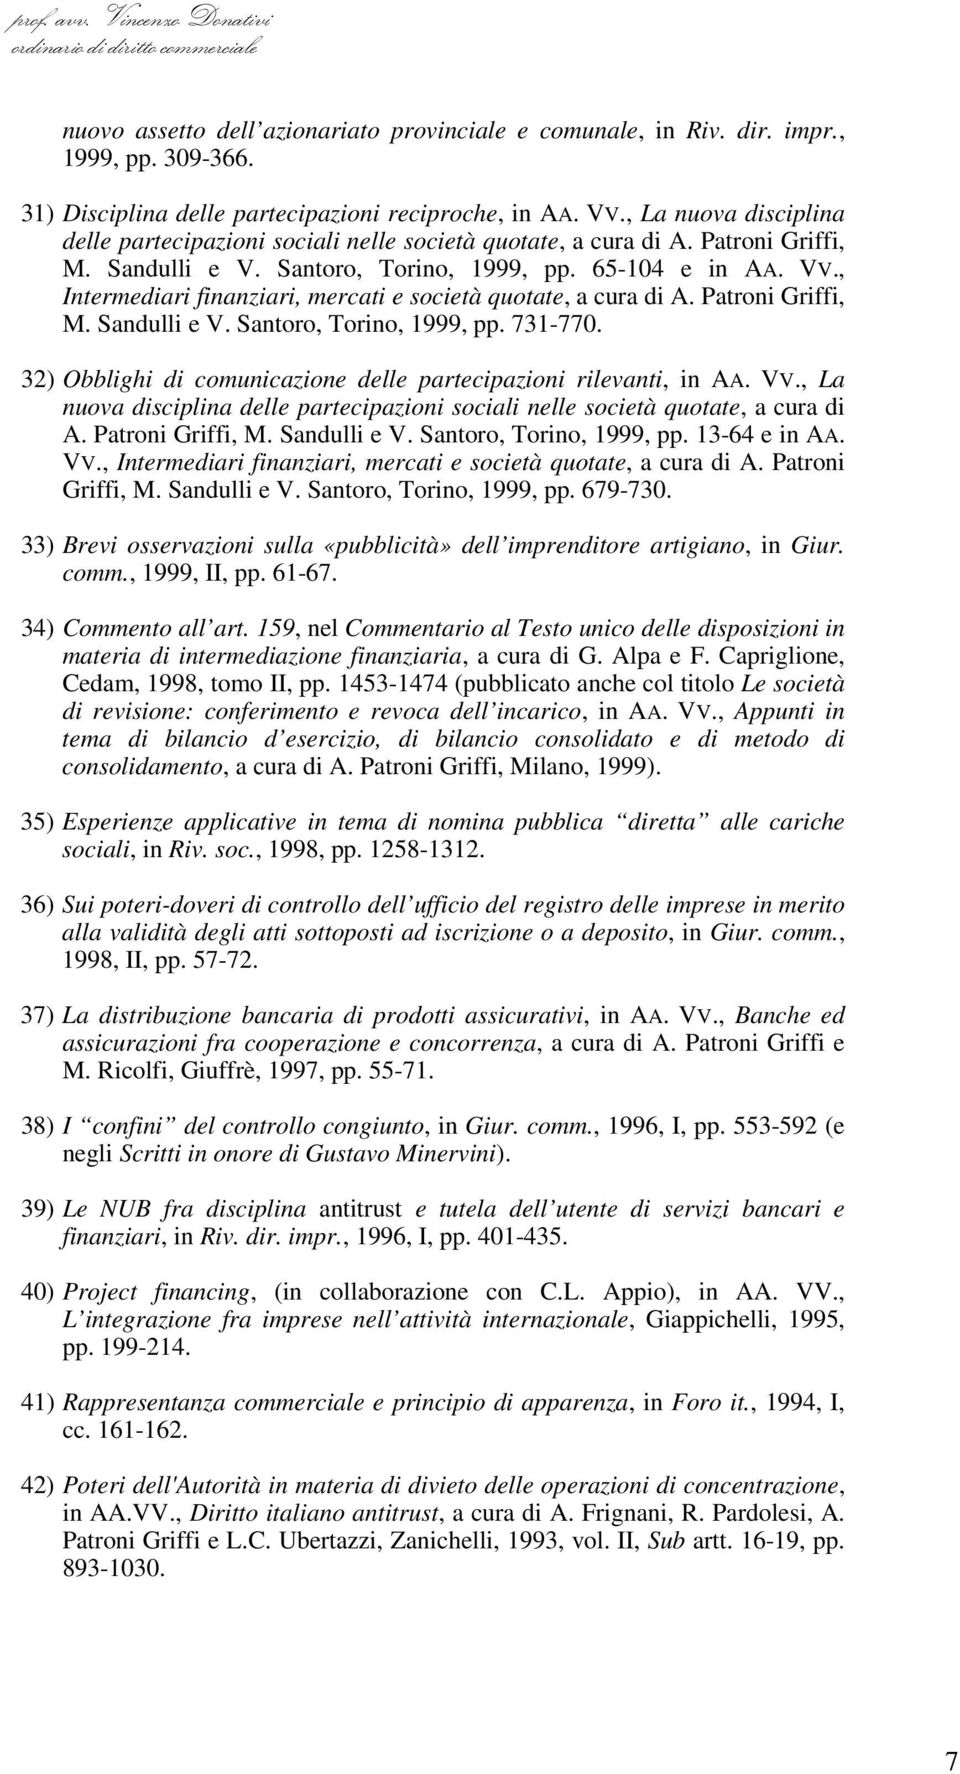 , Intermediari finanziari, mercati e società quotate, a cura di A. Patroni Griffi, M. Sandulli e V. Santoro, Torino, 1999, pp. 731-770.